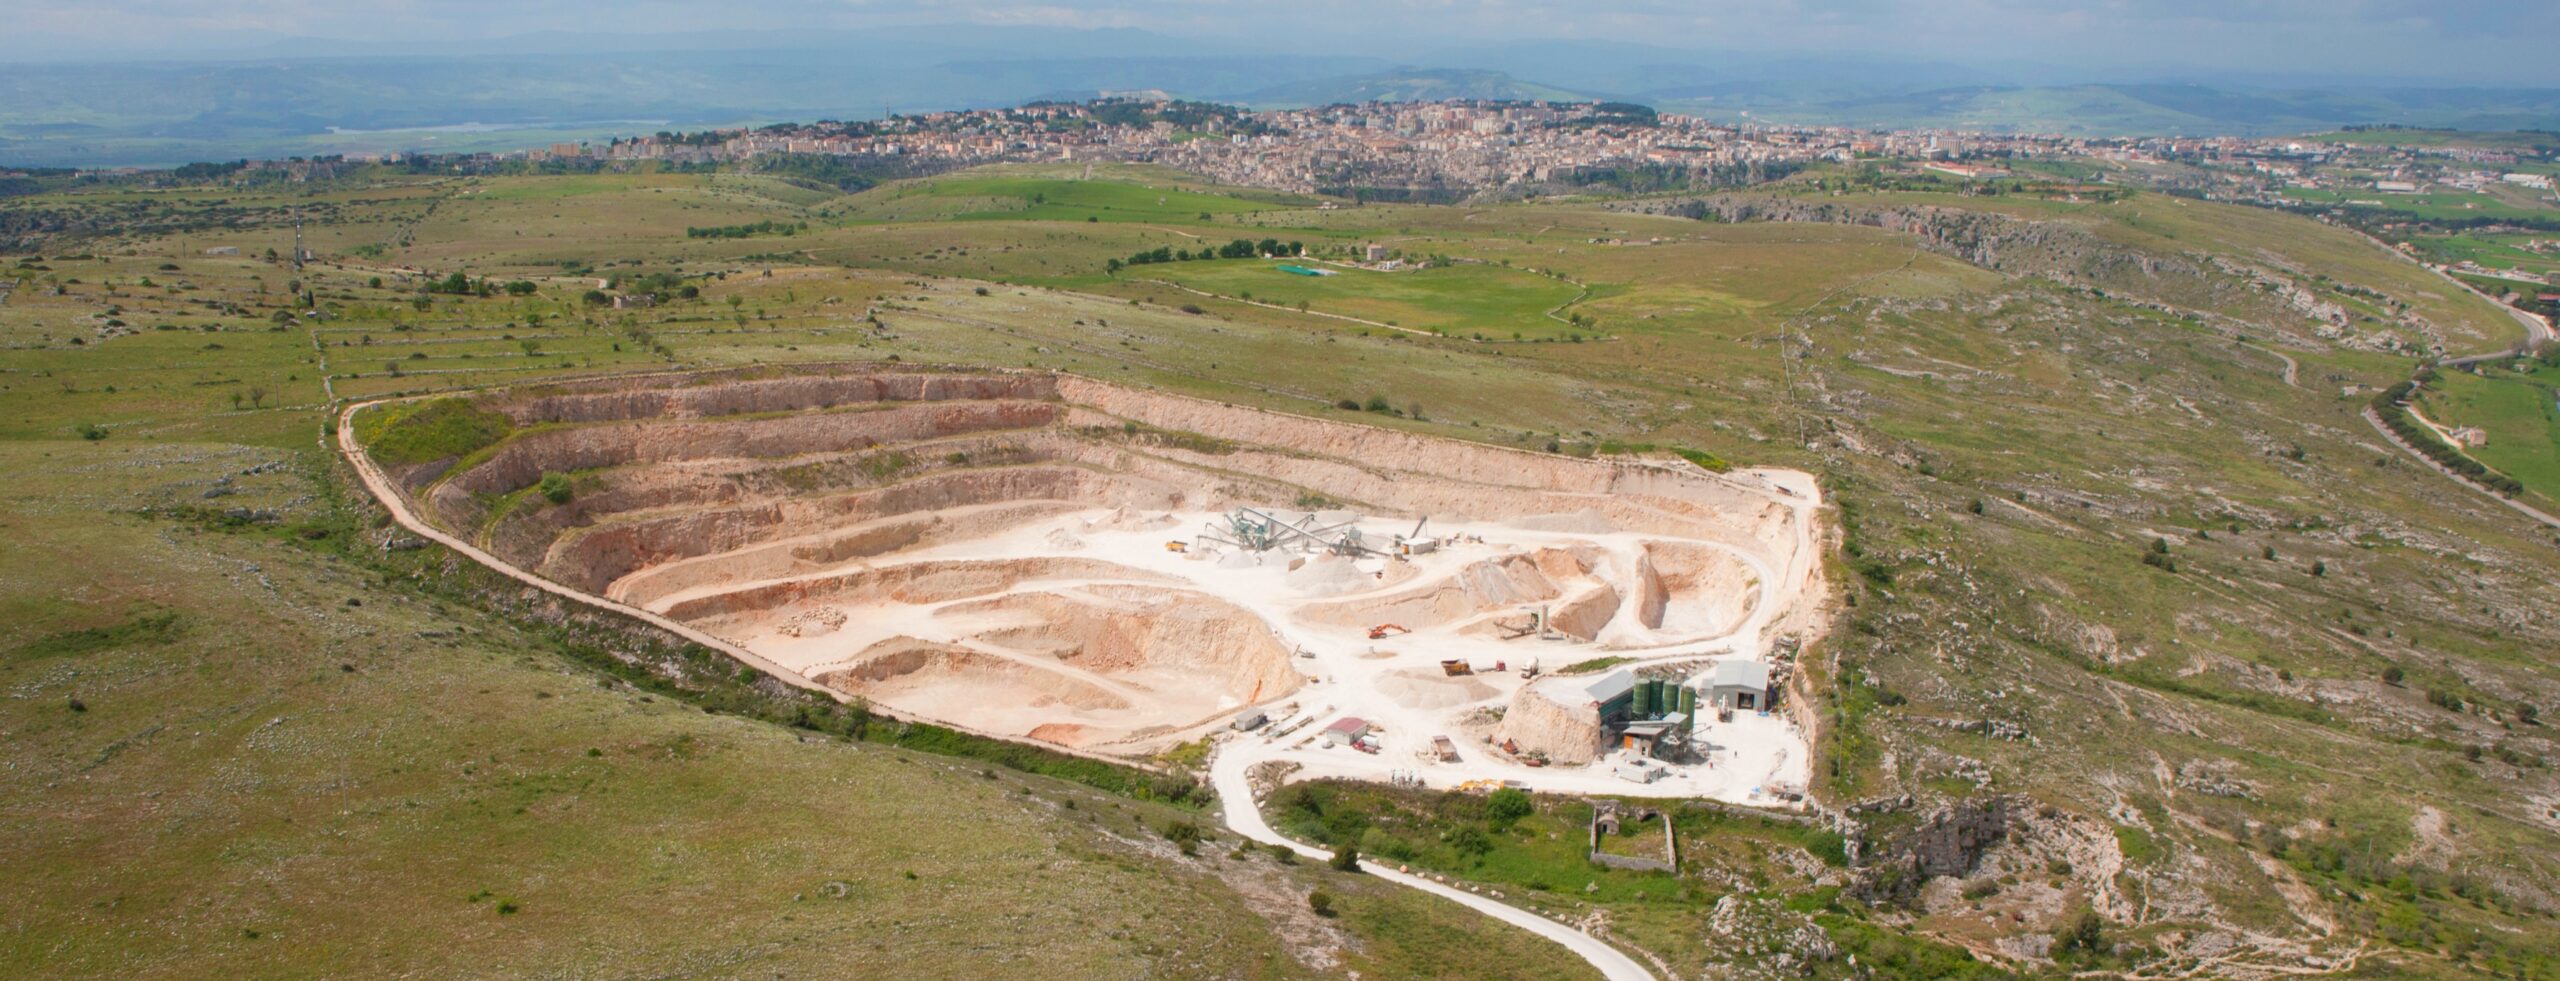 “Il recupero sostenibile delle cave del territorio”:  il 21 a Matera una conferenza internazionale per riflettere sulla riqualificazione progettuale in ottica ambientale